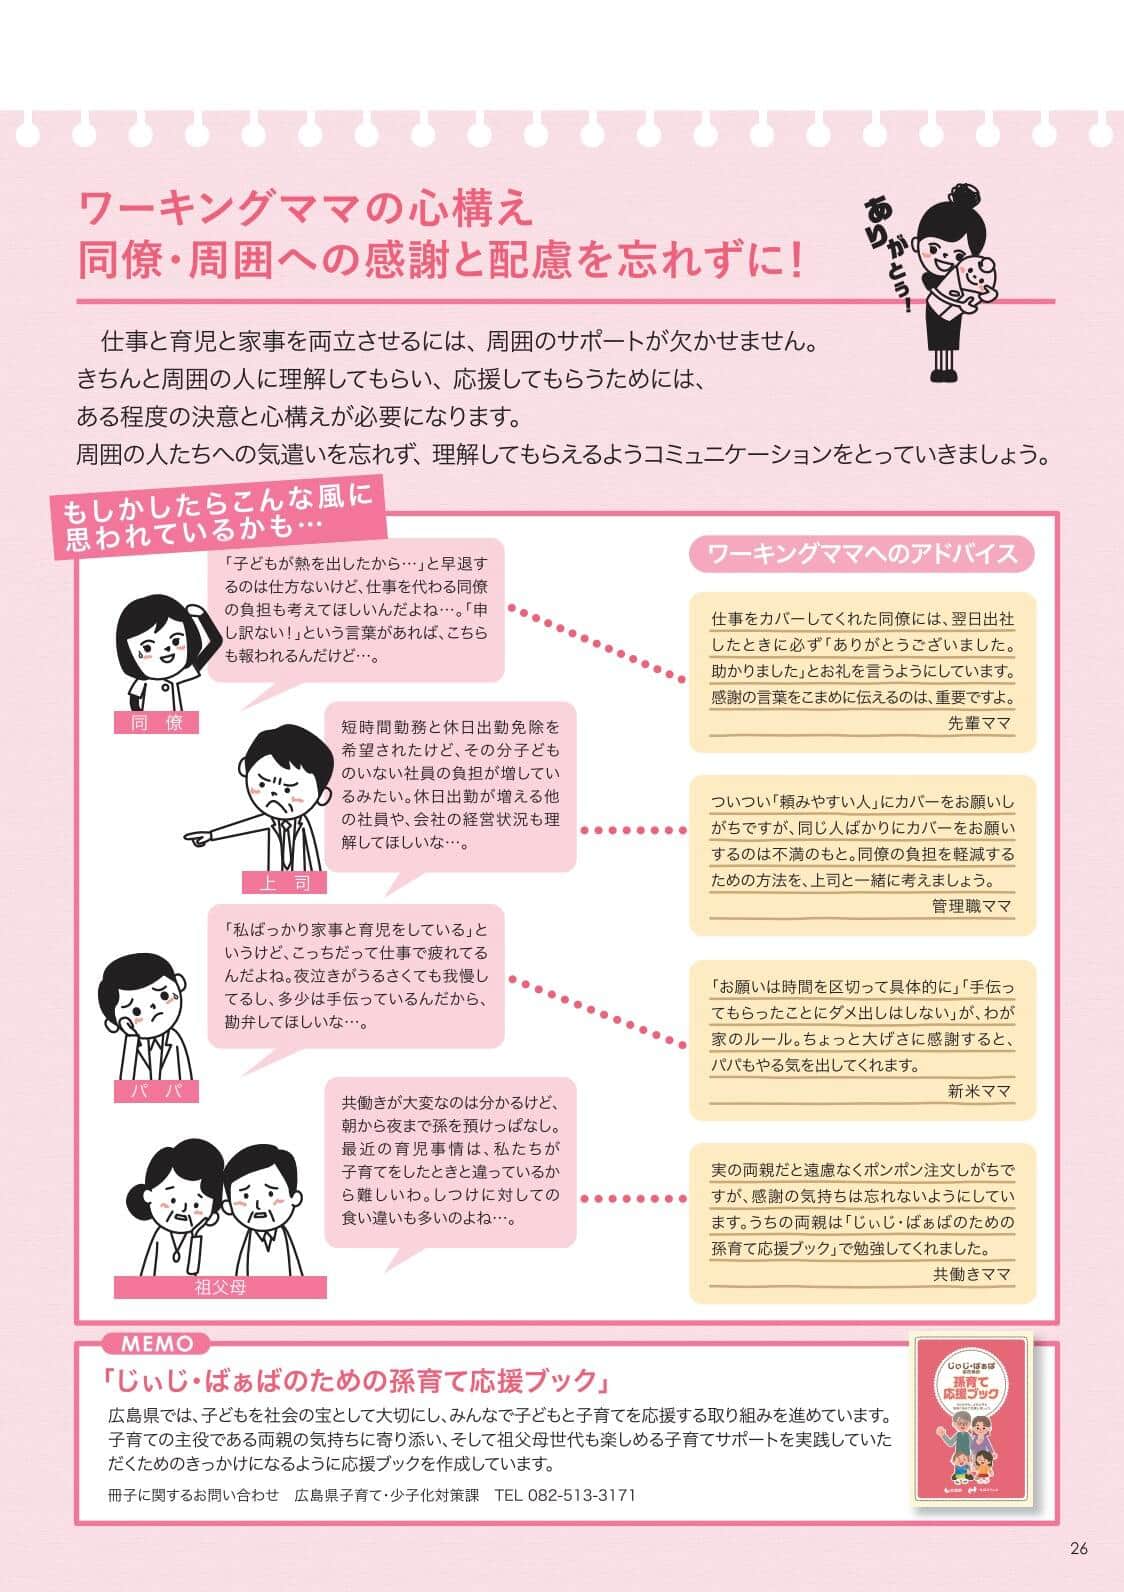 広島県が配布している「働く女性応援よくばりハンドブック」